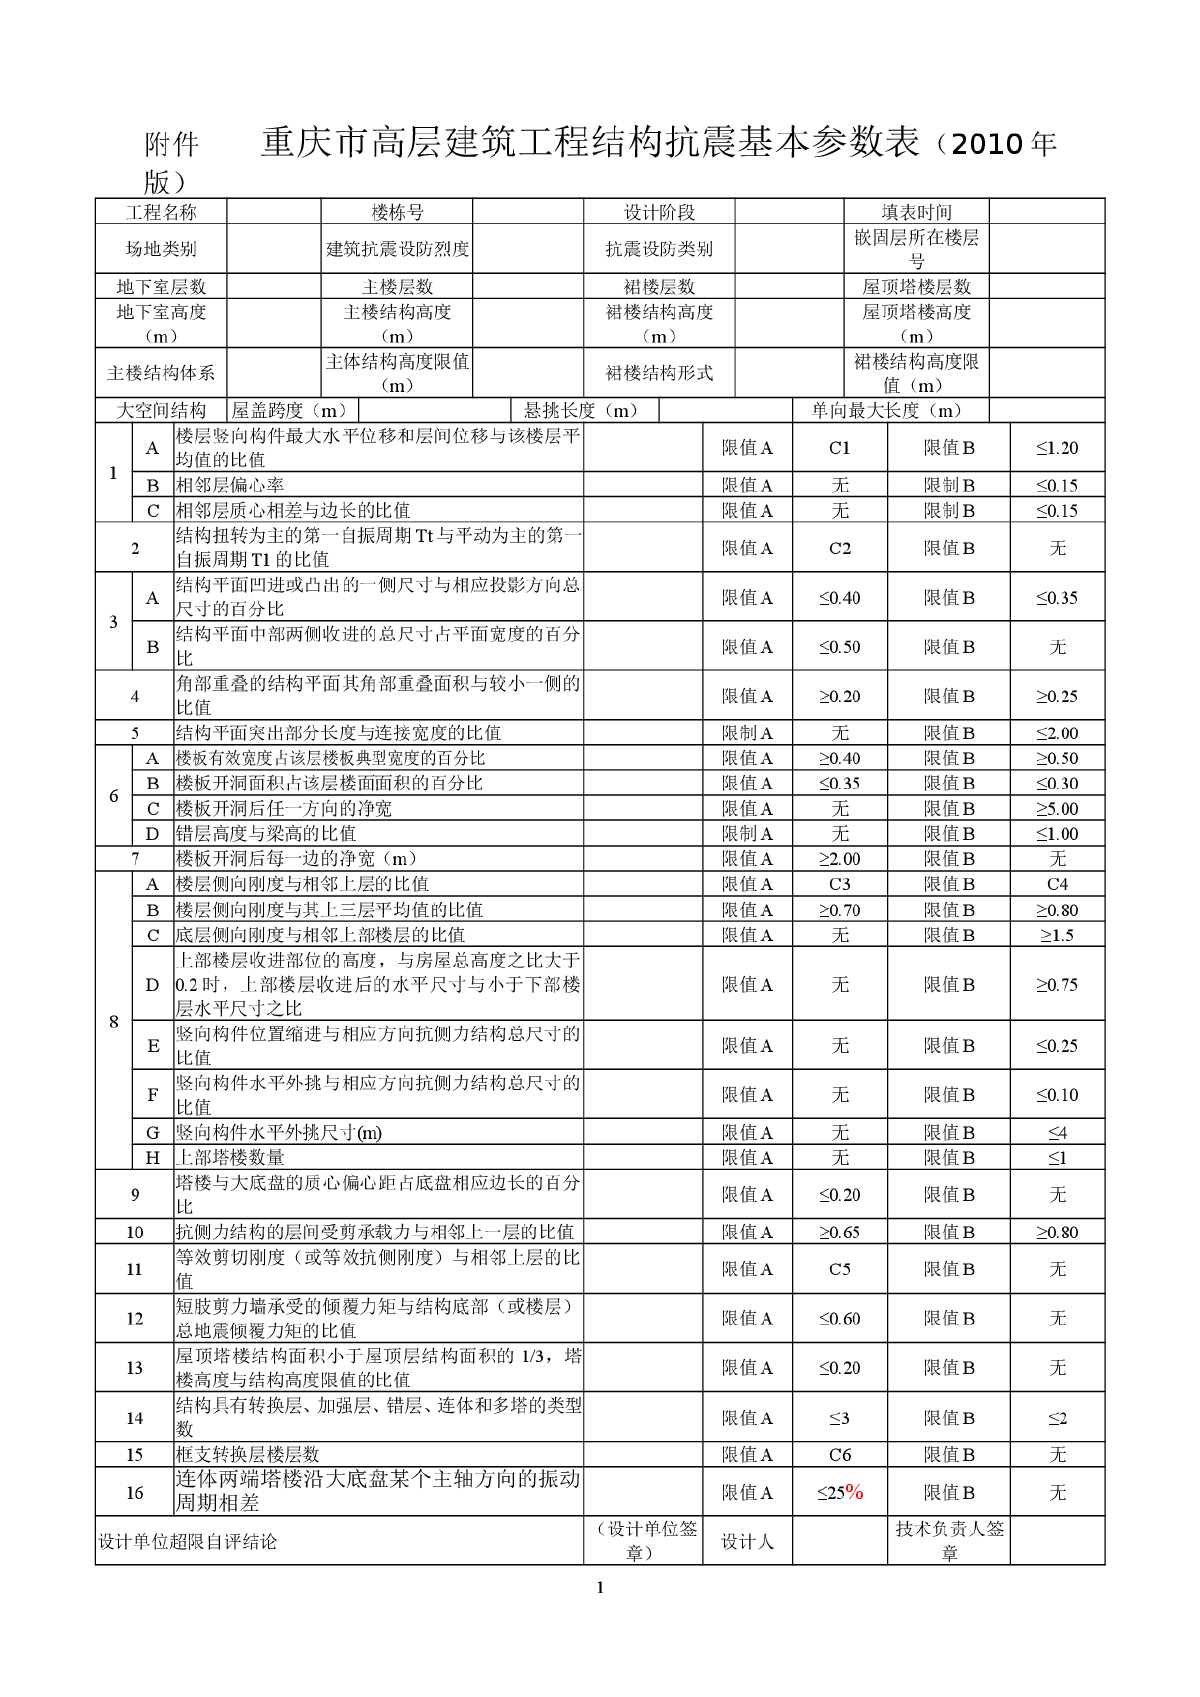 重庆市高层建筑工程结构抗震基本参数表填写说明